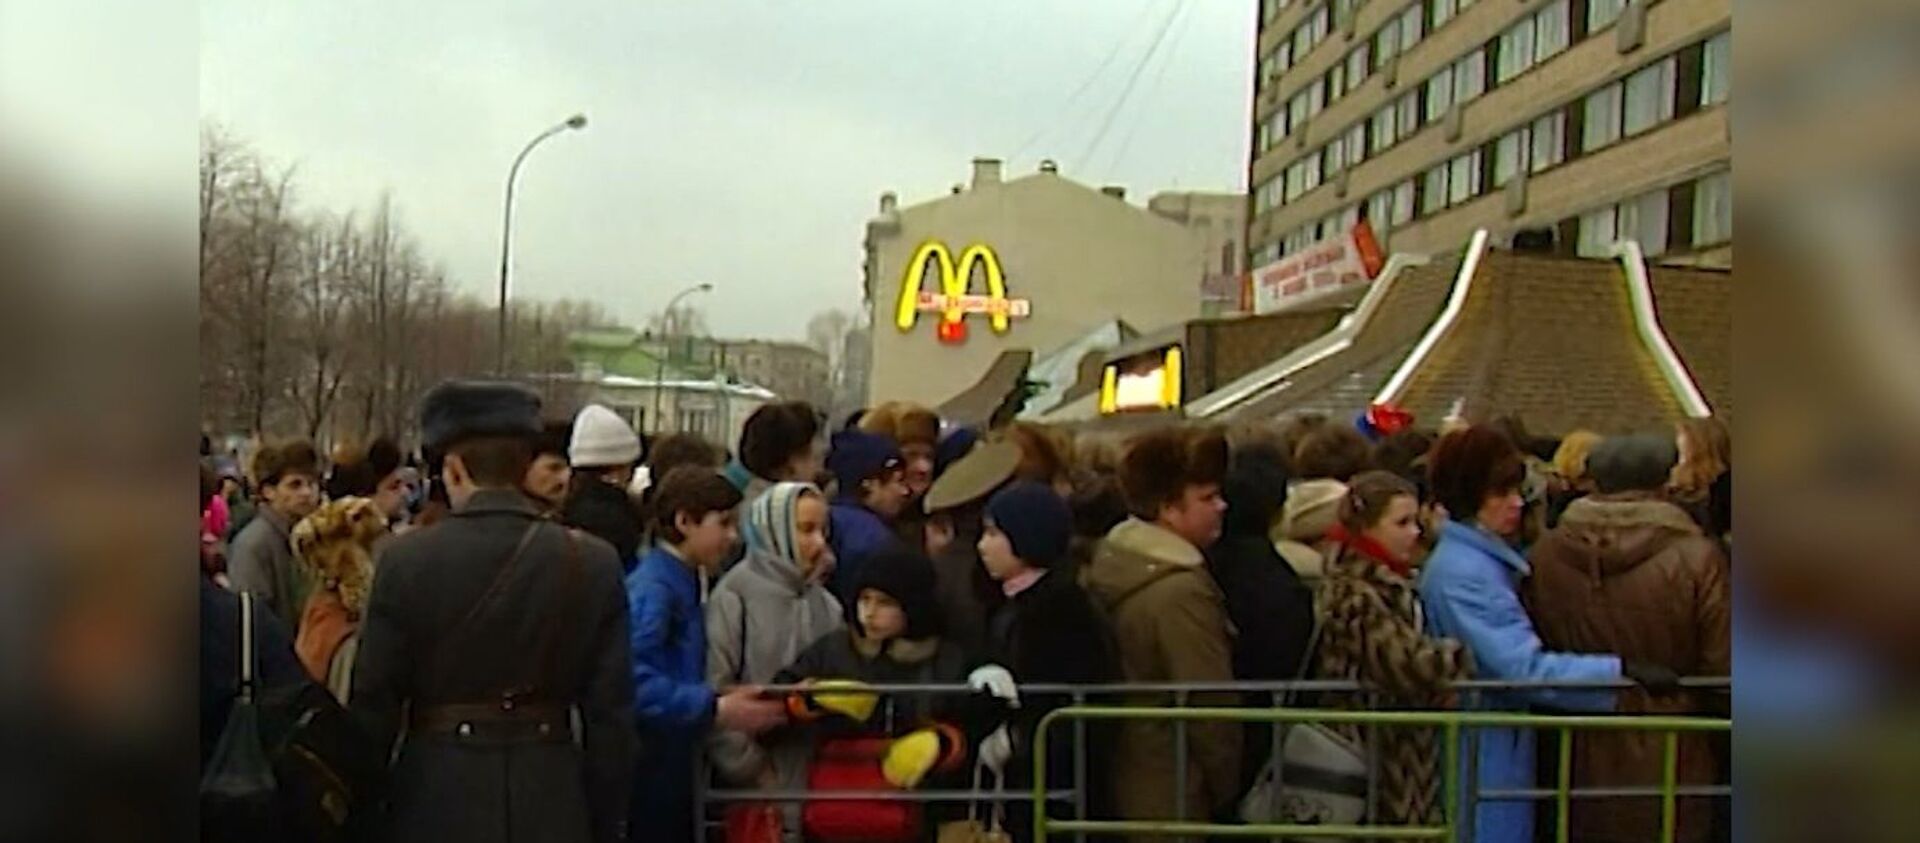 Beş bin kişilik kuyruk: 31 Ocak 1990’da Rusya’nın ilk McDonalds restoranı açıldı - Sputnik Türkiye, 1920, 31.01.2020